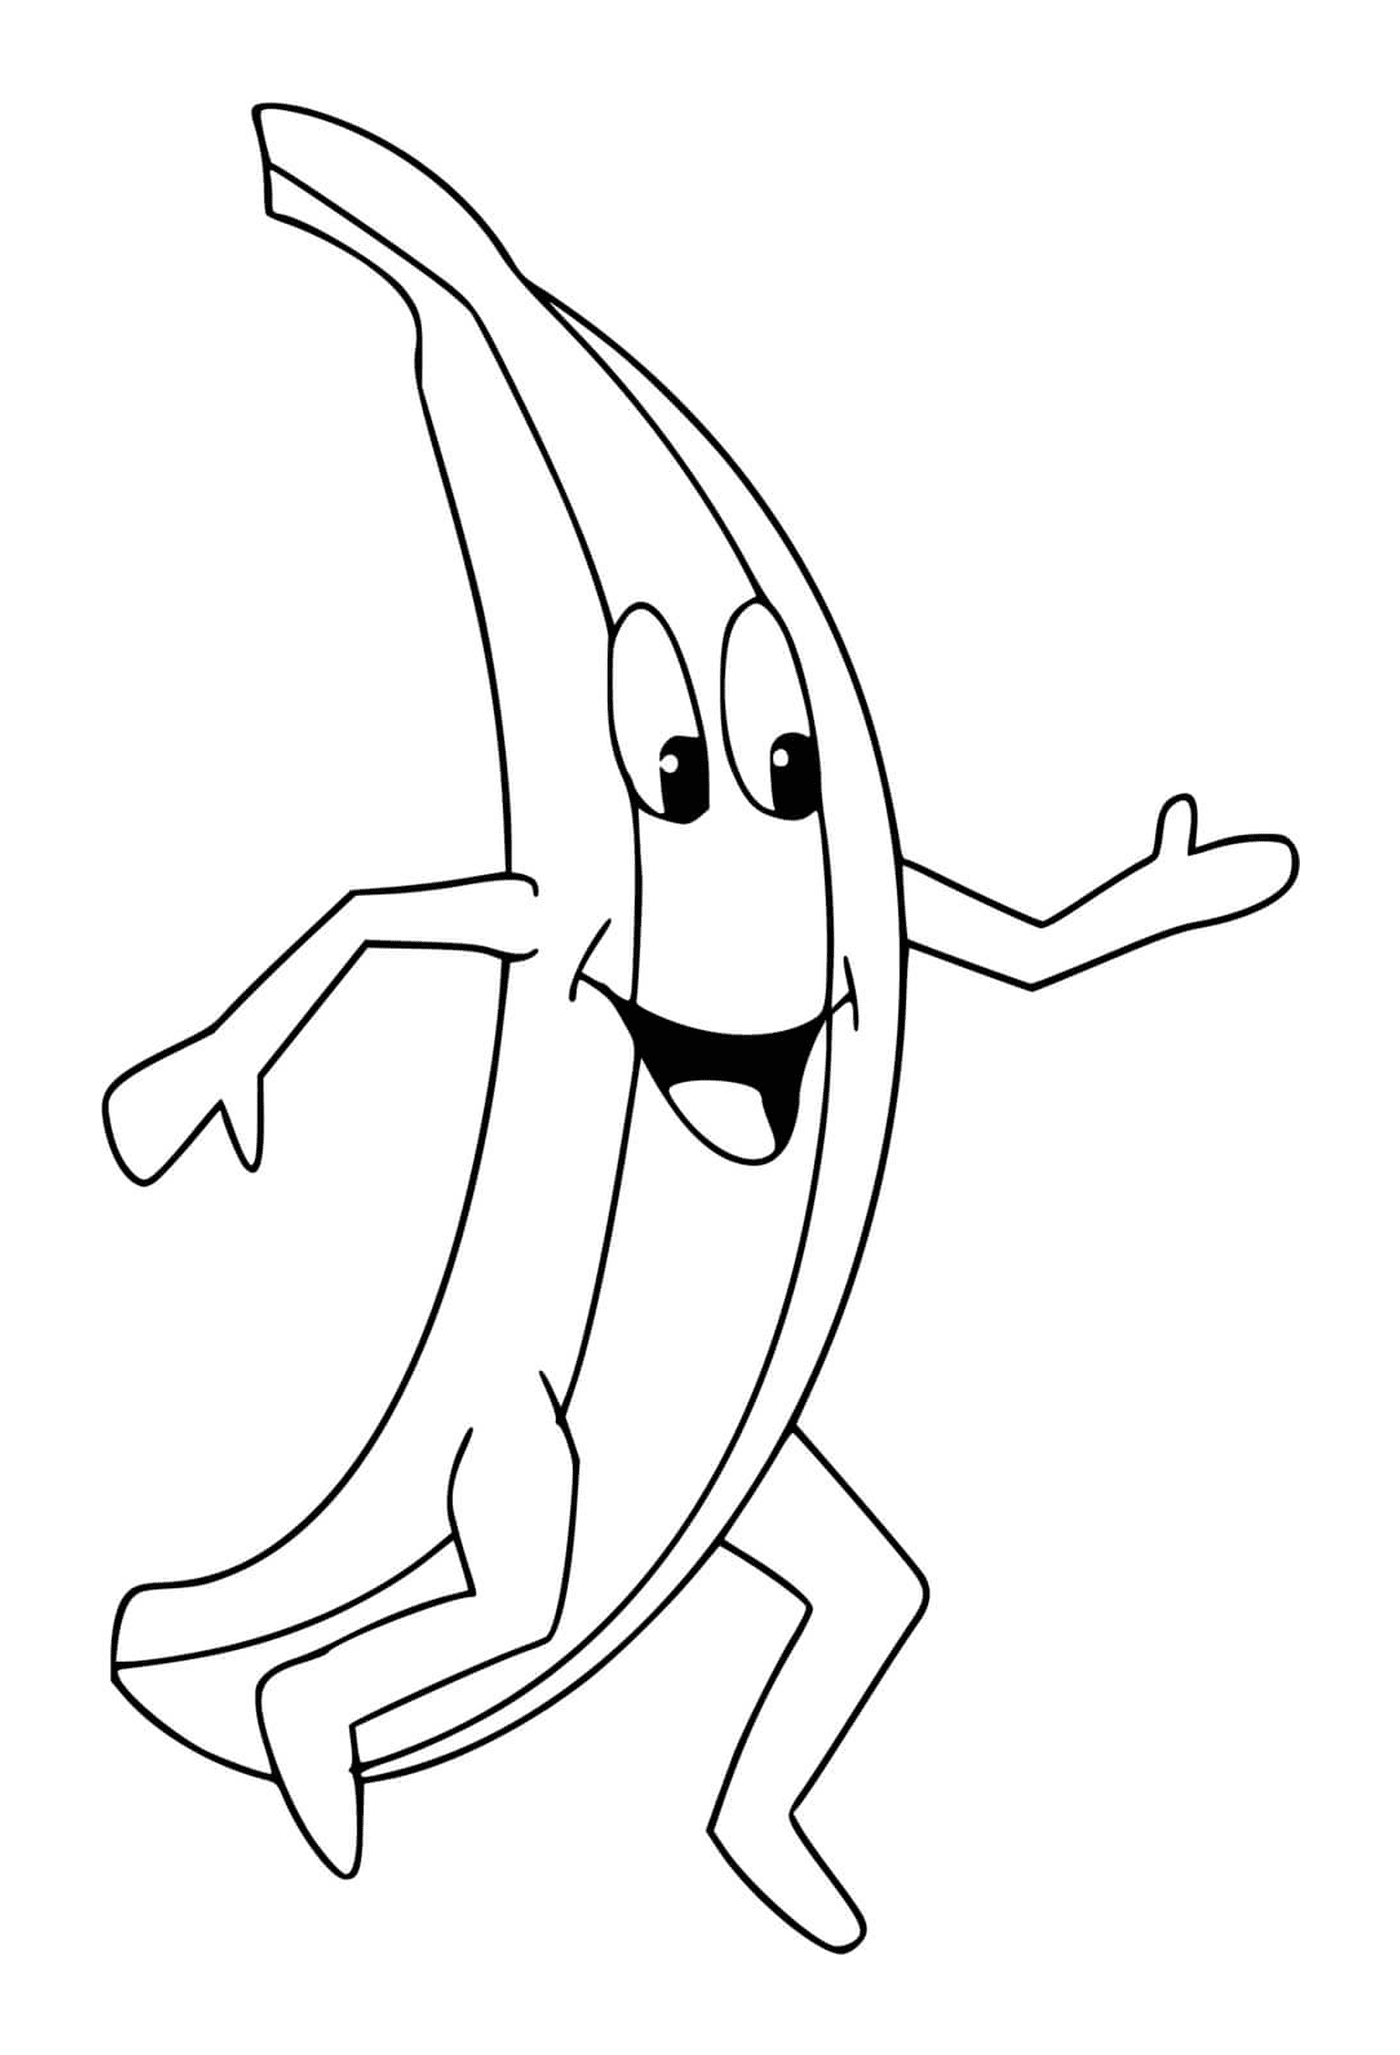  Eine Banane 